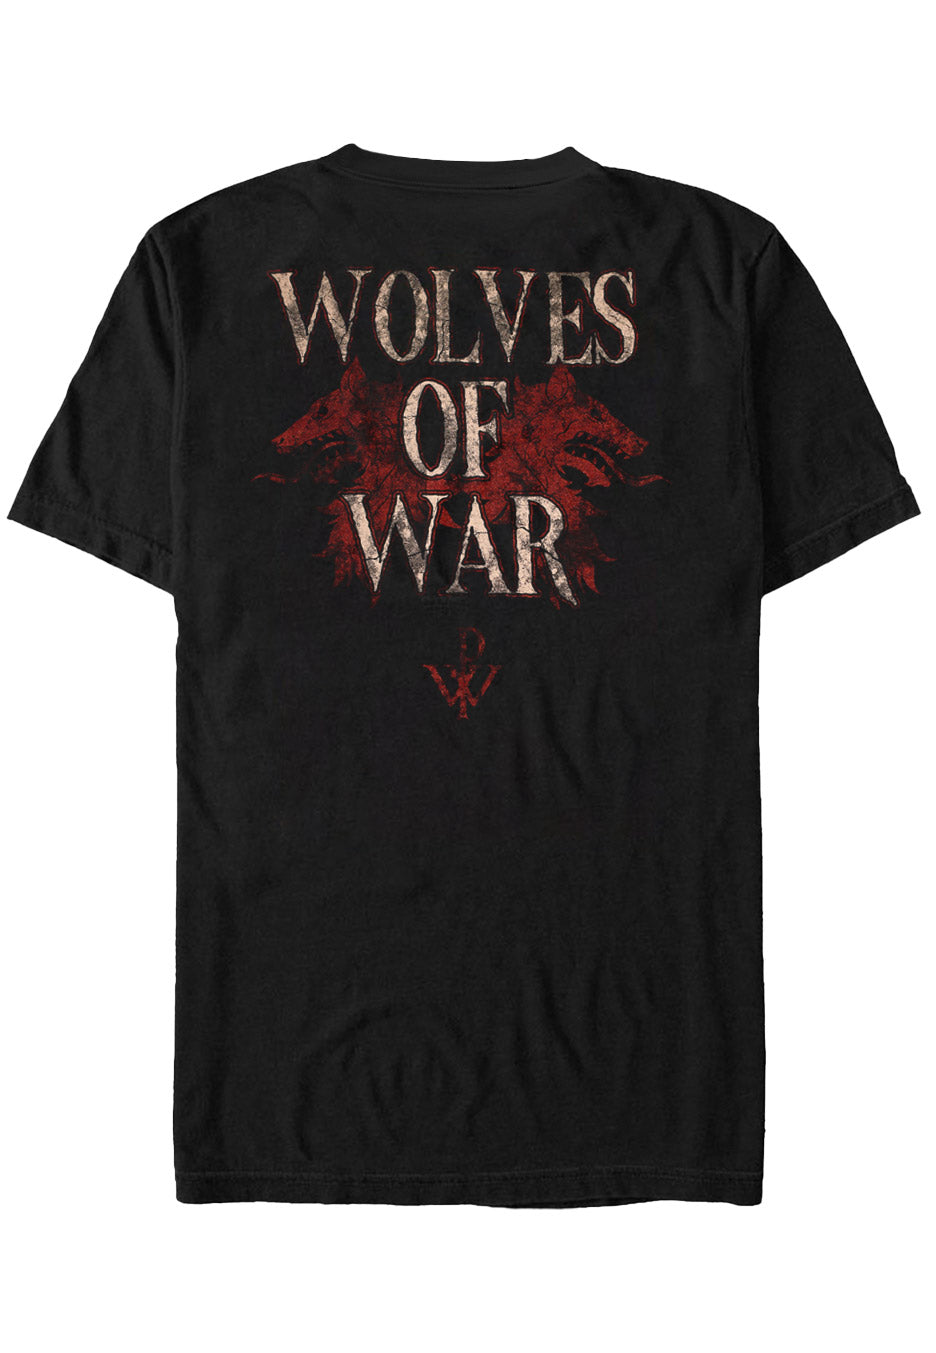 Powerwolf - Wolves Of War - T-Shirt